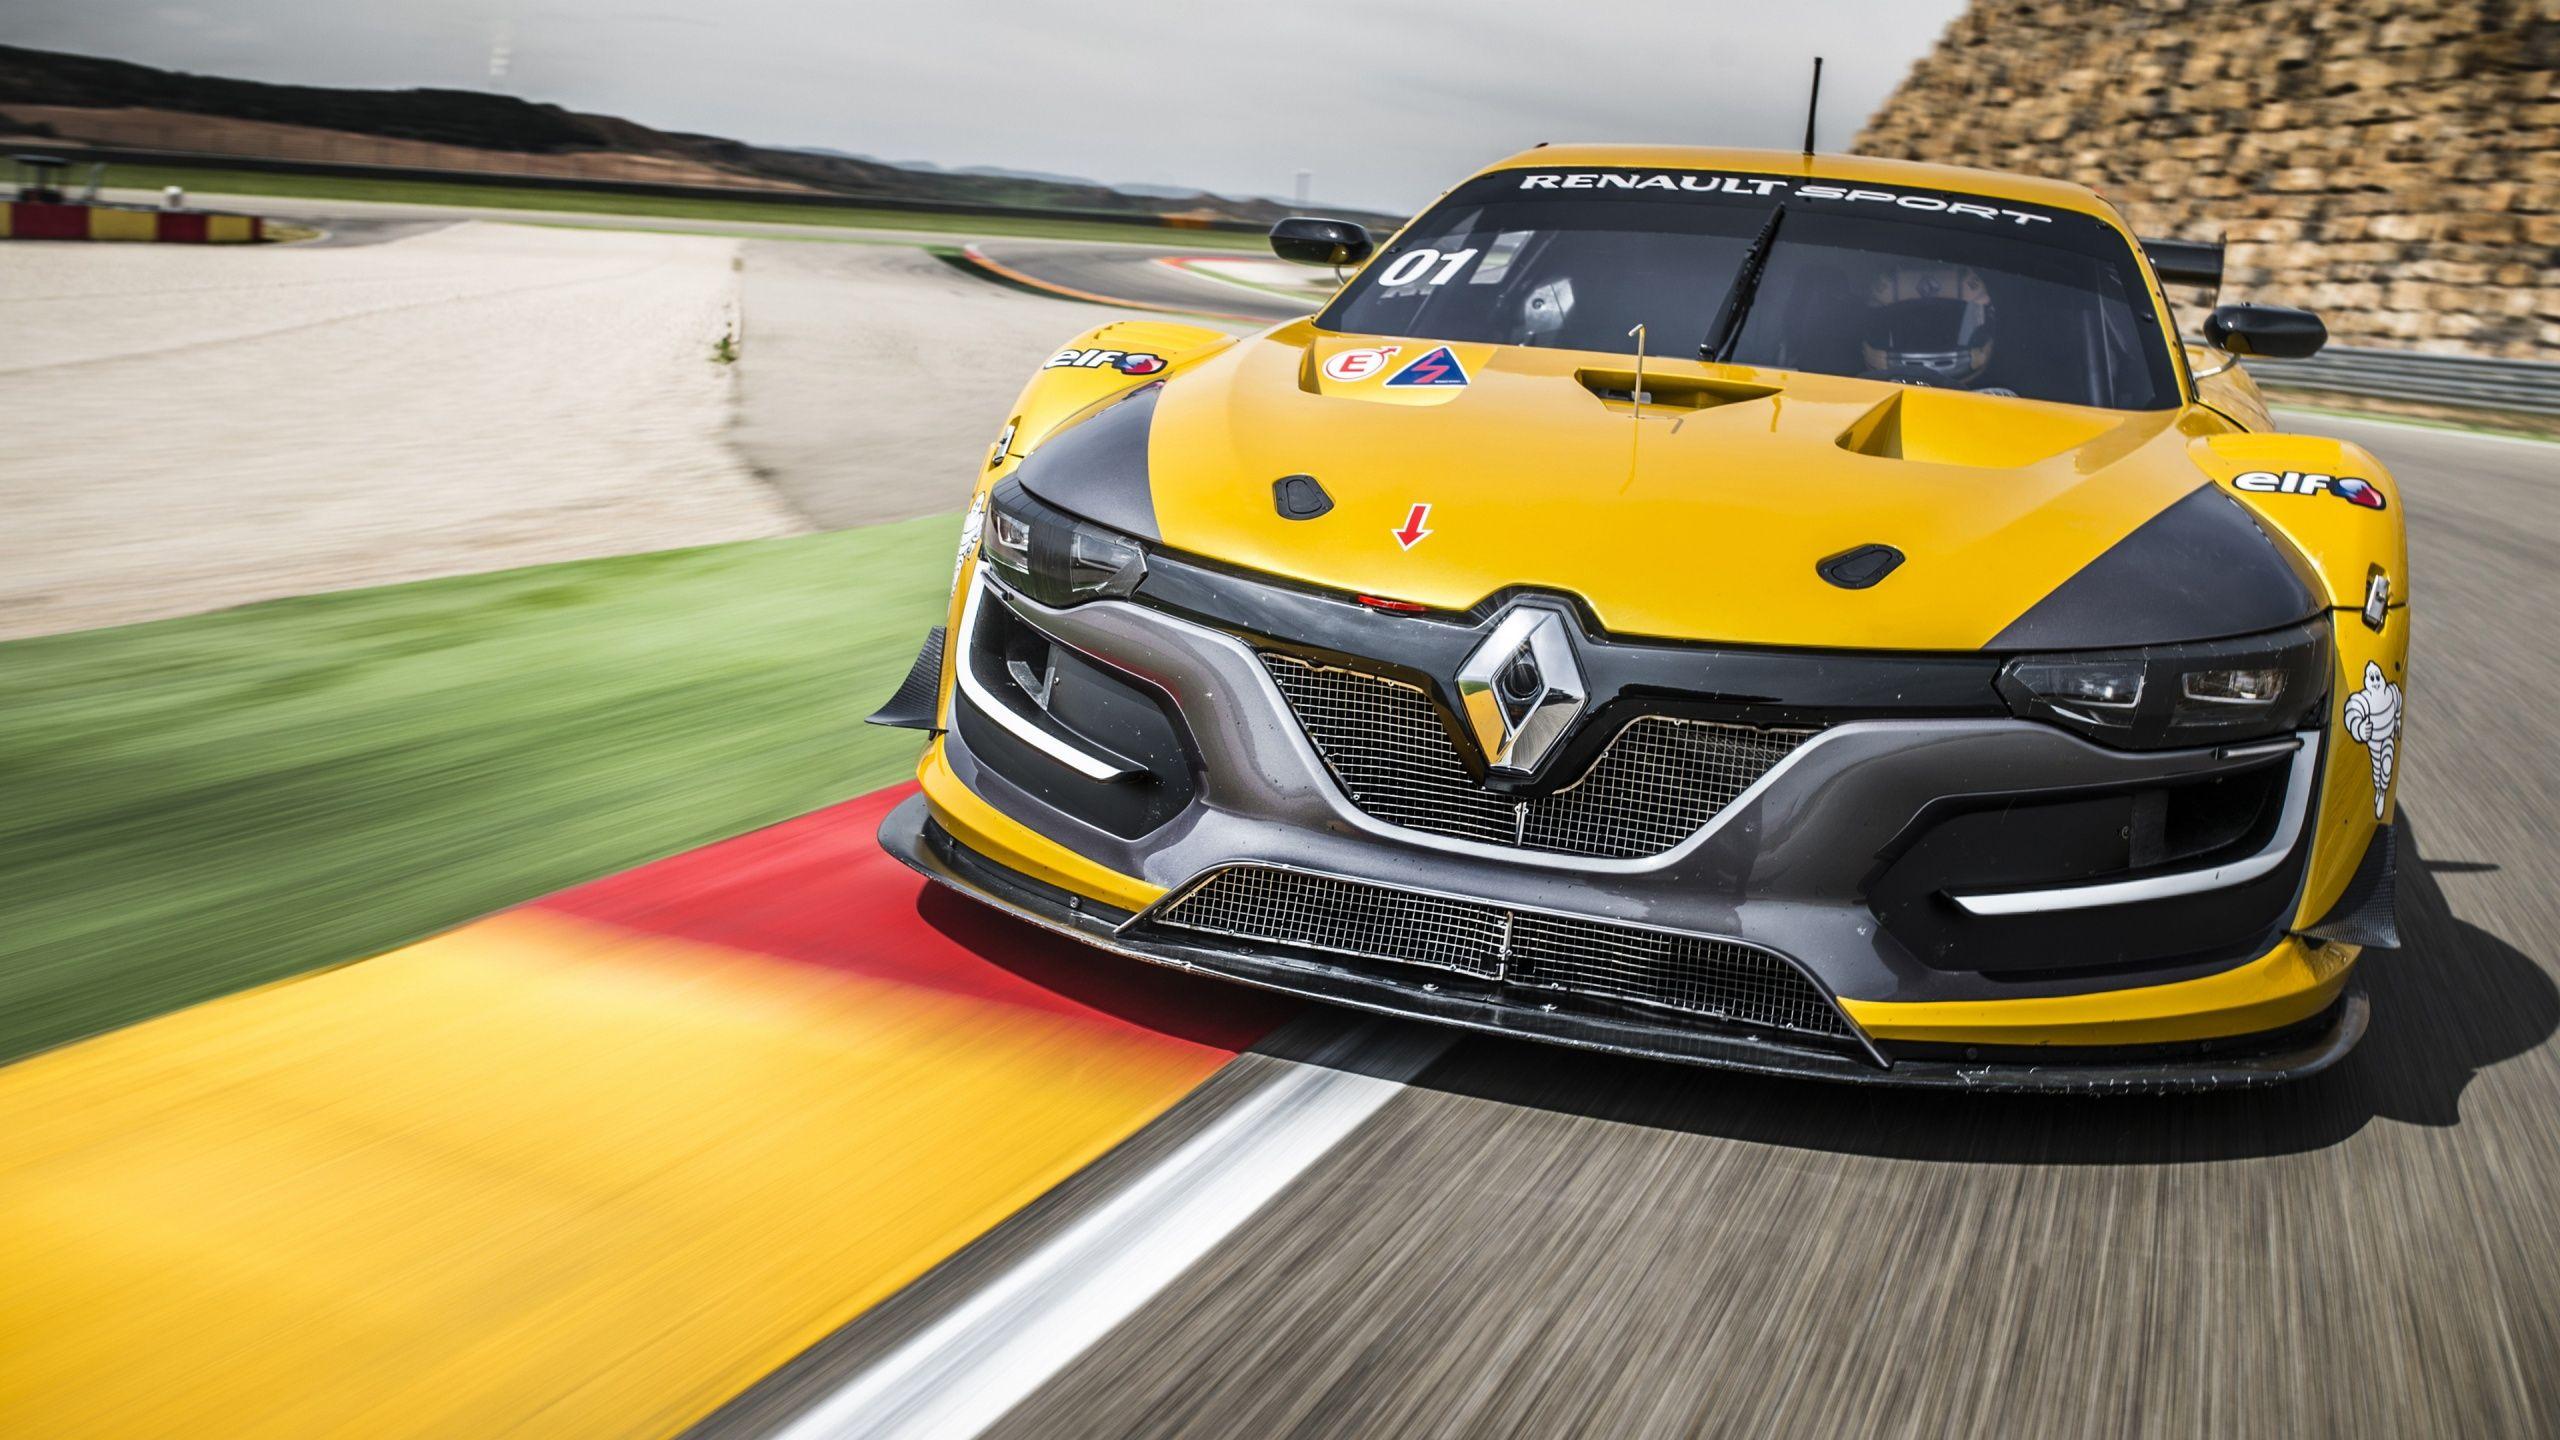 Renault Sport RS Racing Car Wallpaper in jpg format for free download